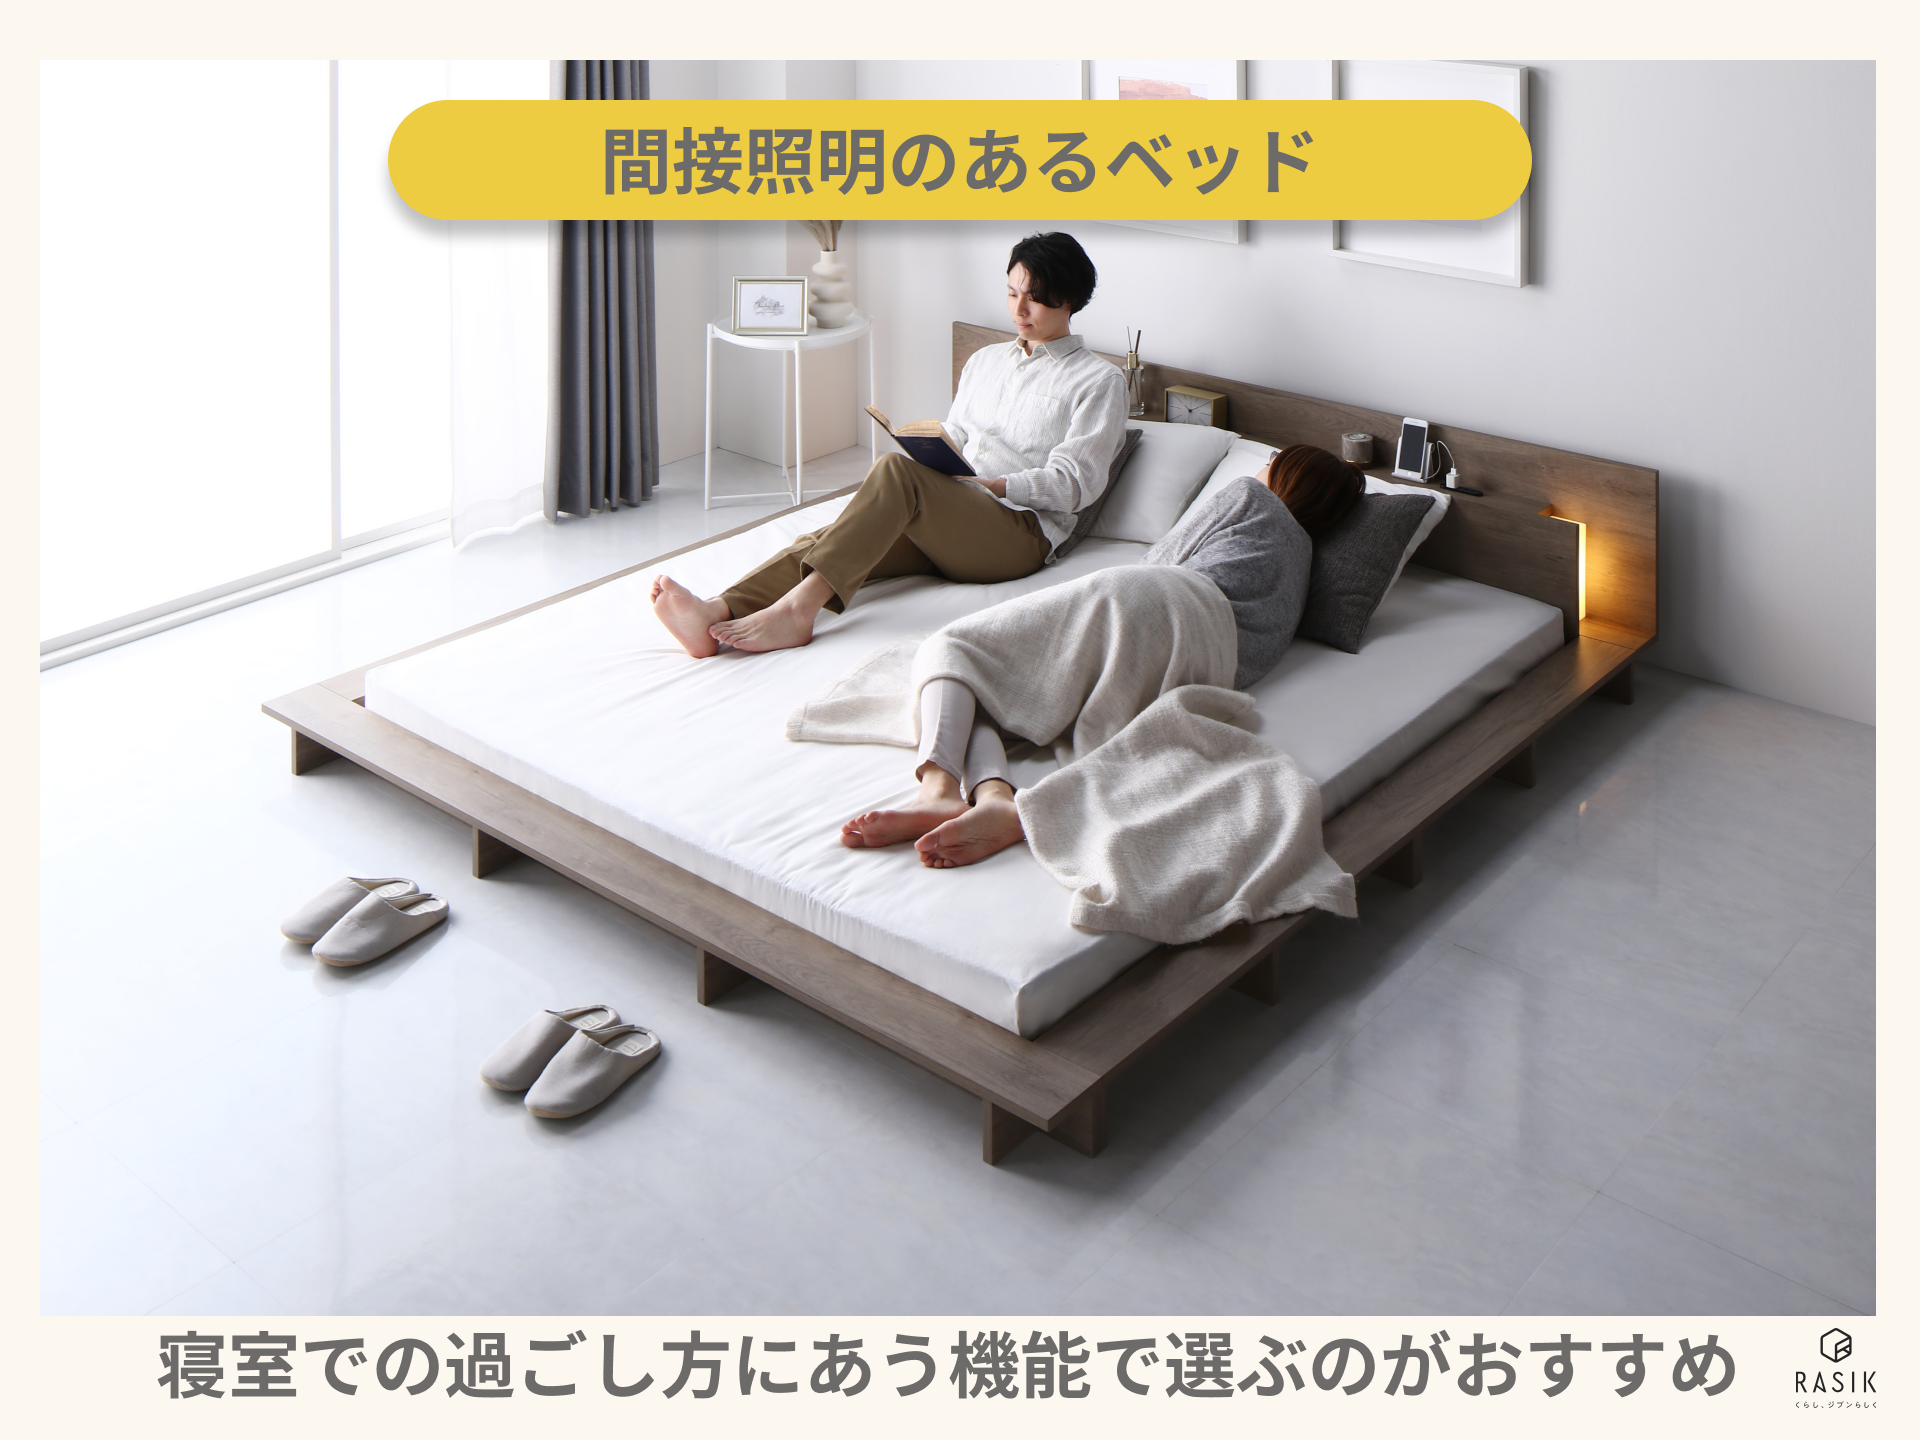 間接照明のあるベッドをカップルで使用する様子